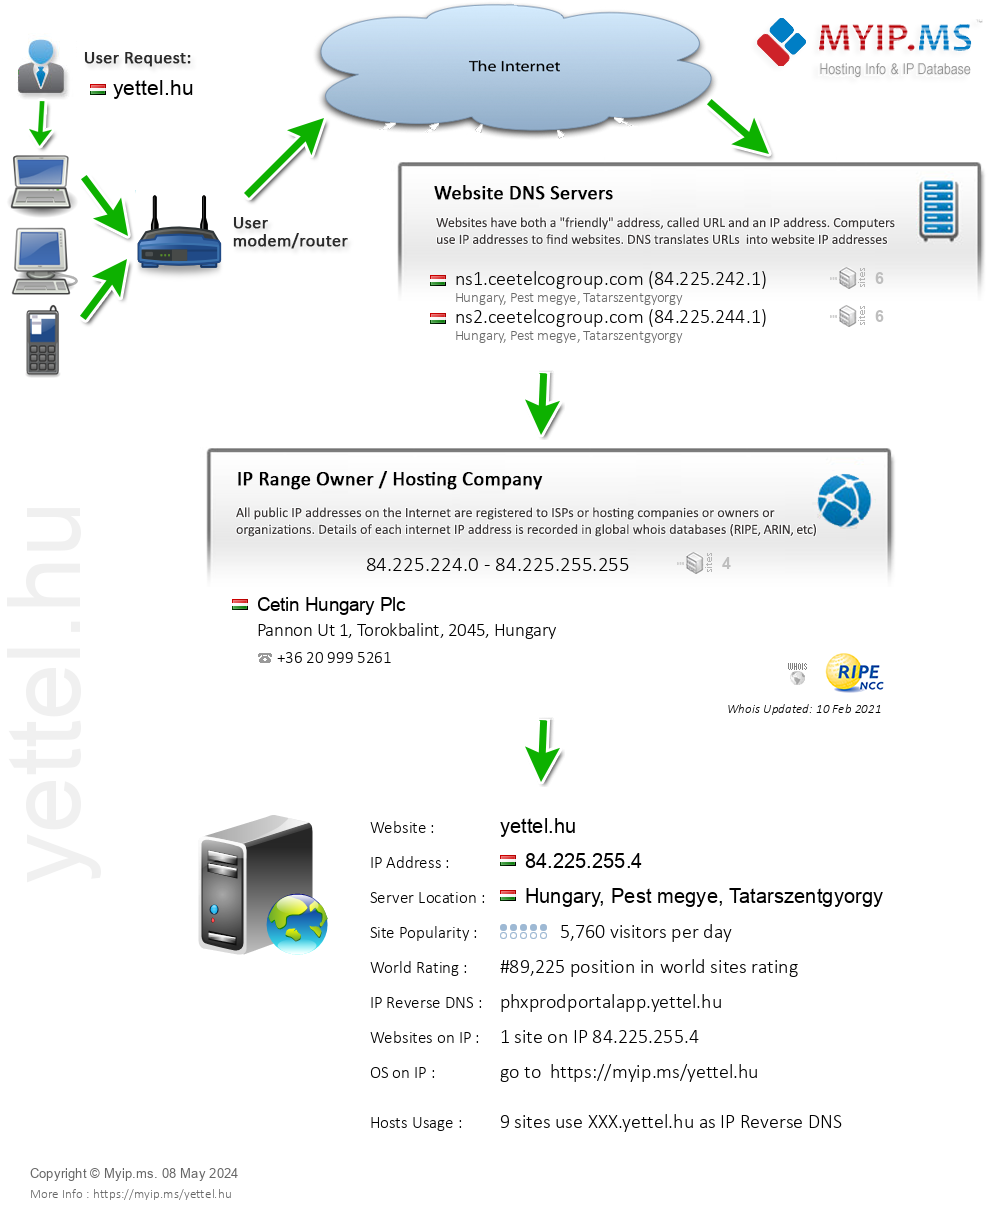 Yettel.hu - Website Hosting Visual IP Diagram